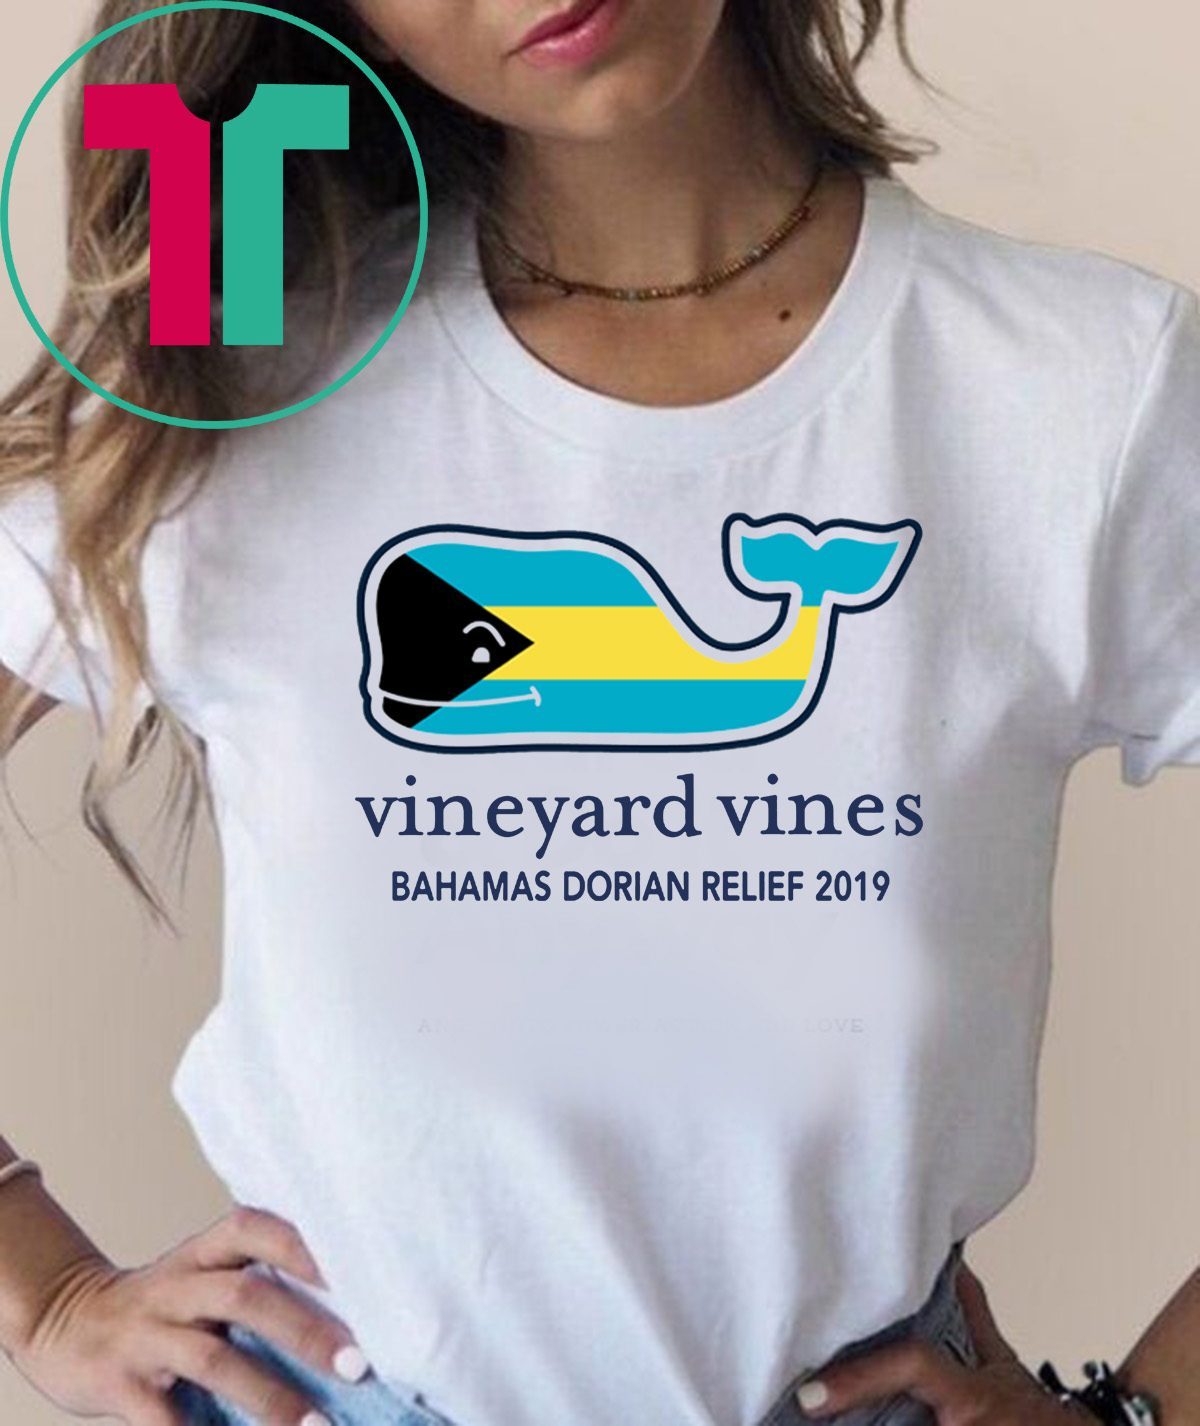 vineyard vines yankees t shirt